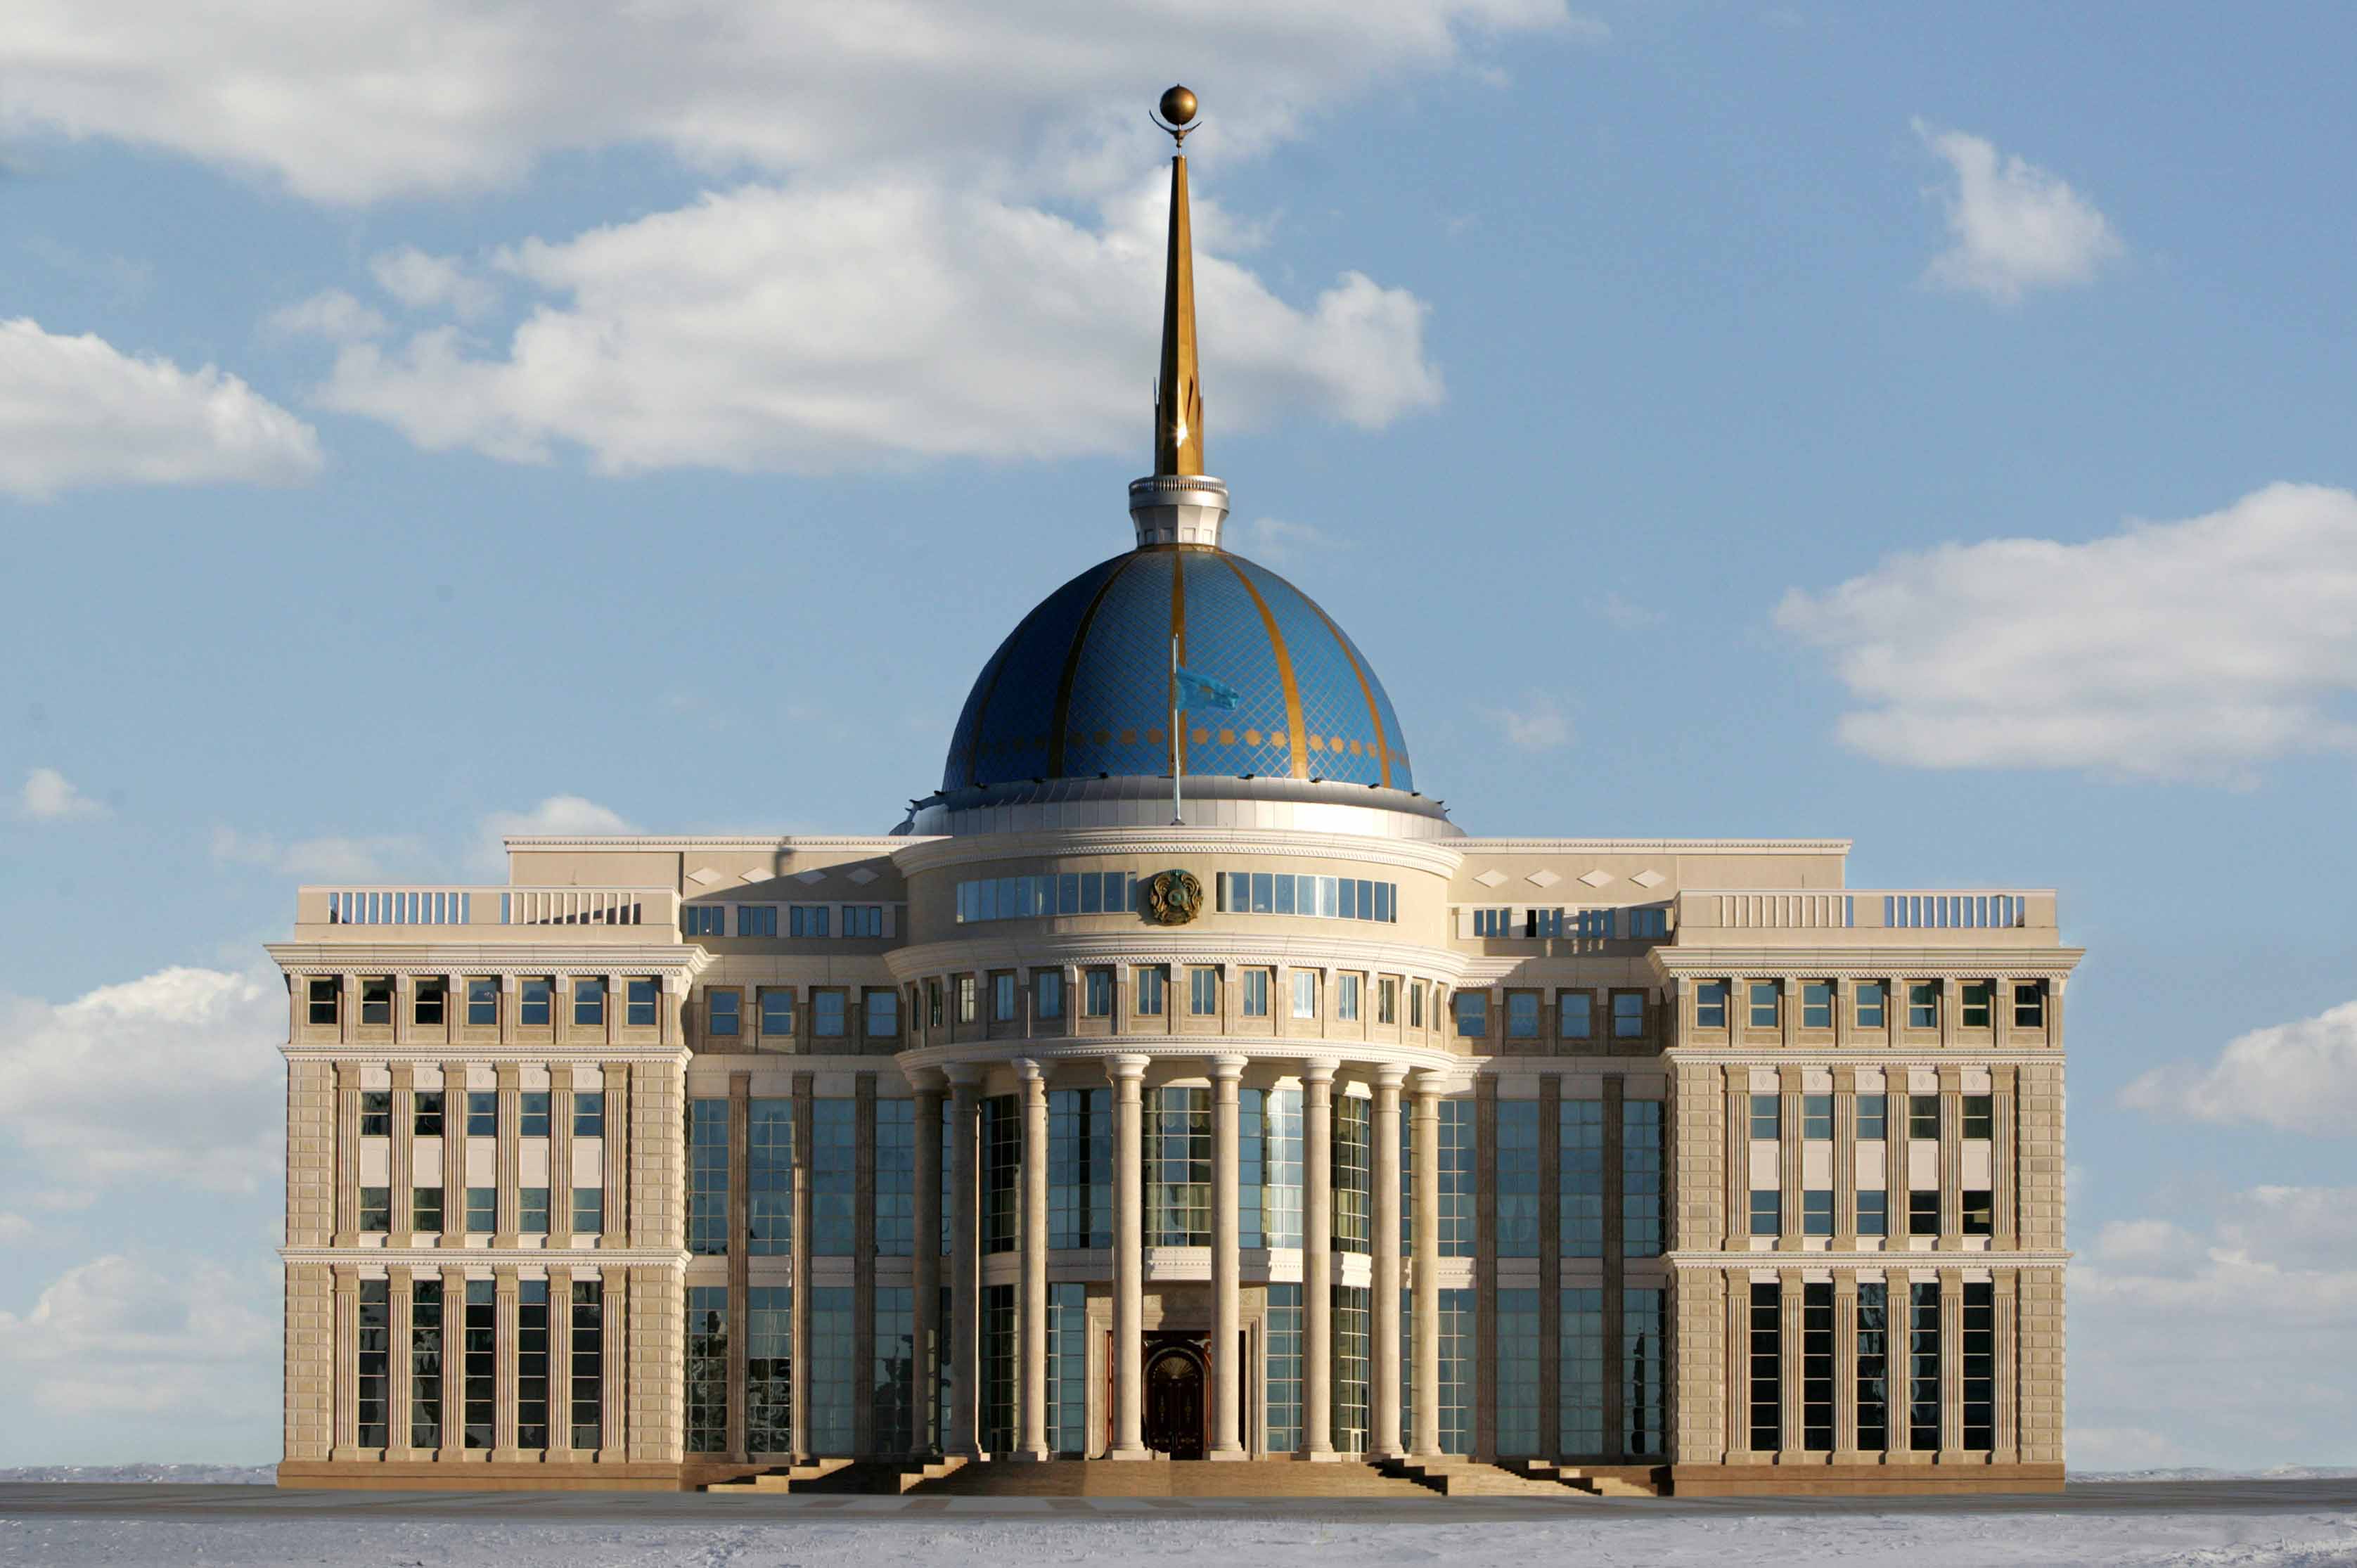 Kazakh President send a telegram of congratulations to Xi Jinping 